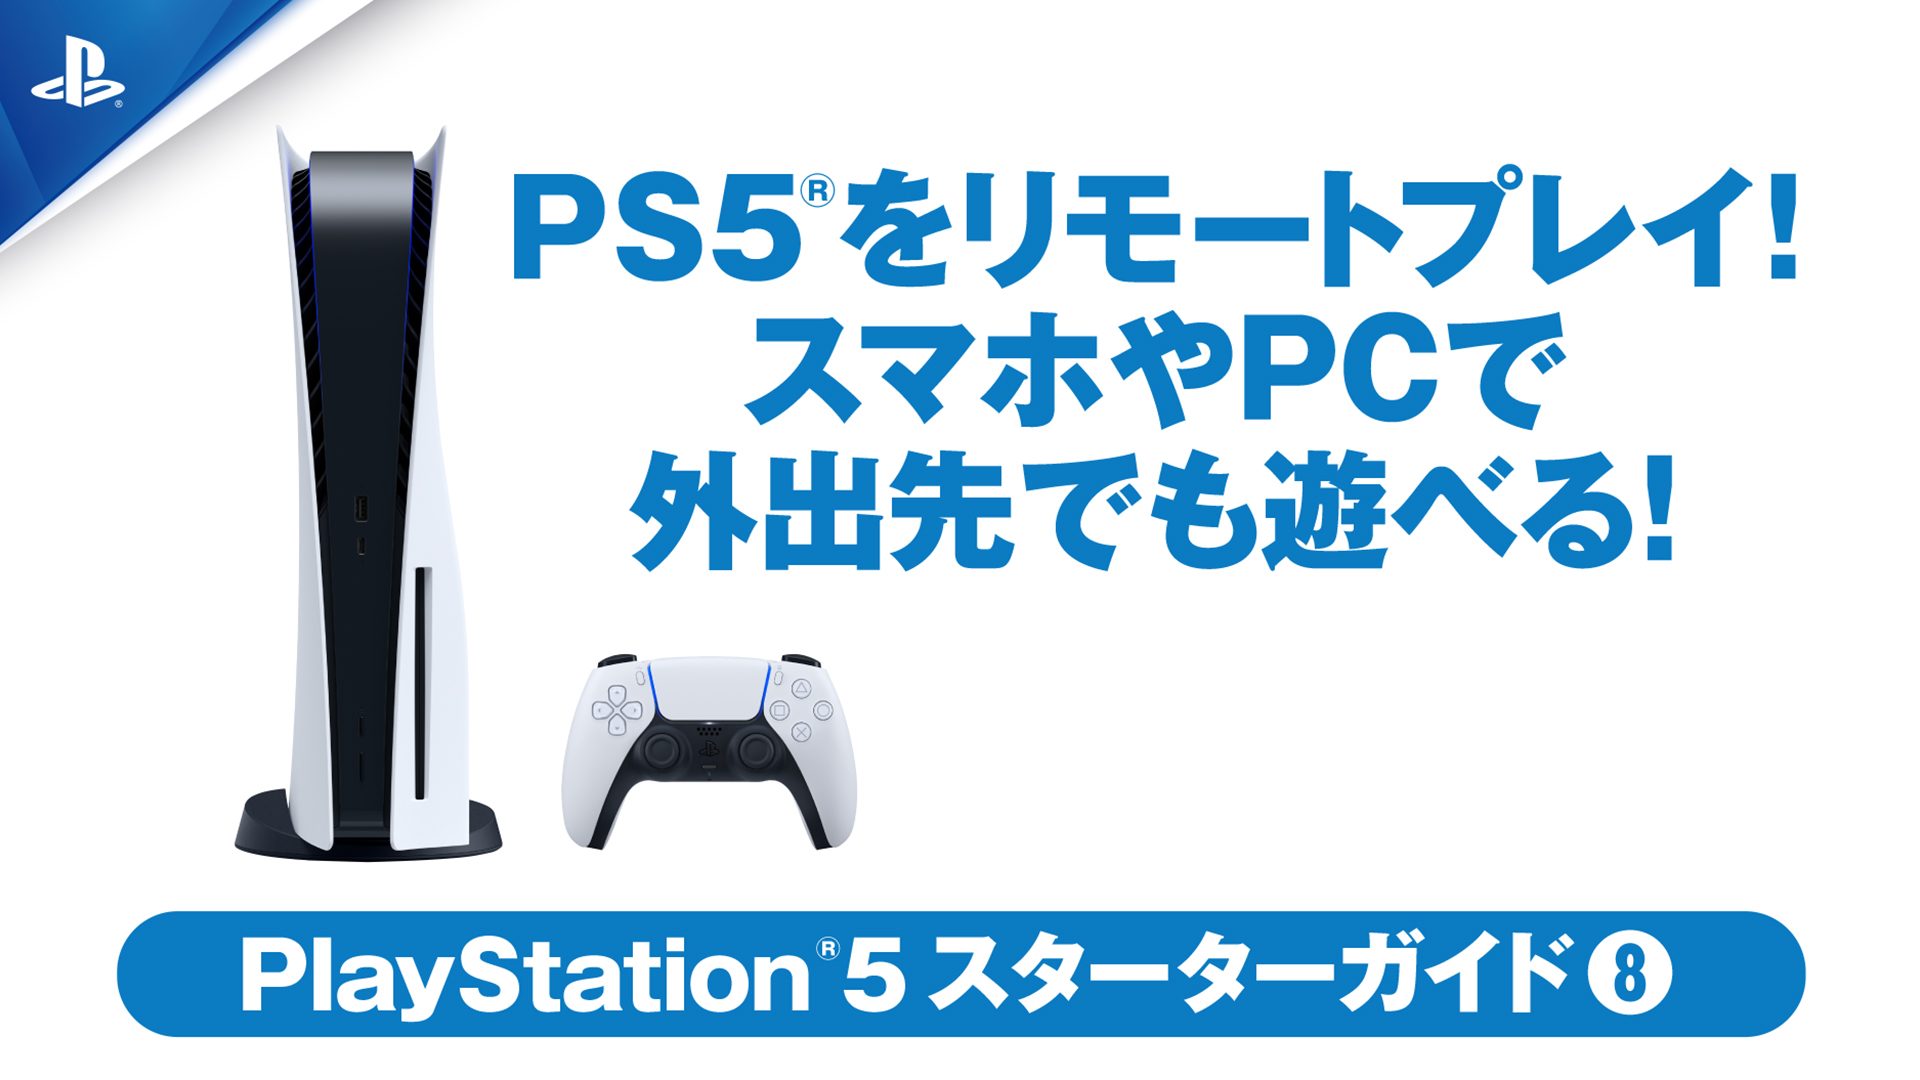 PlayStation®5 DualSense® ワイヤレスコントローラー ダブルパック」を 